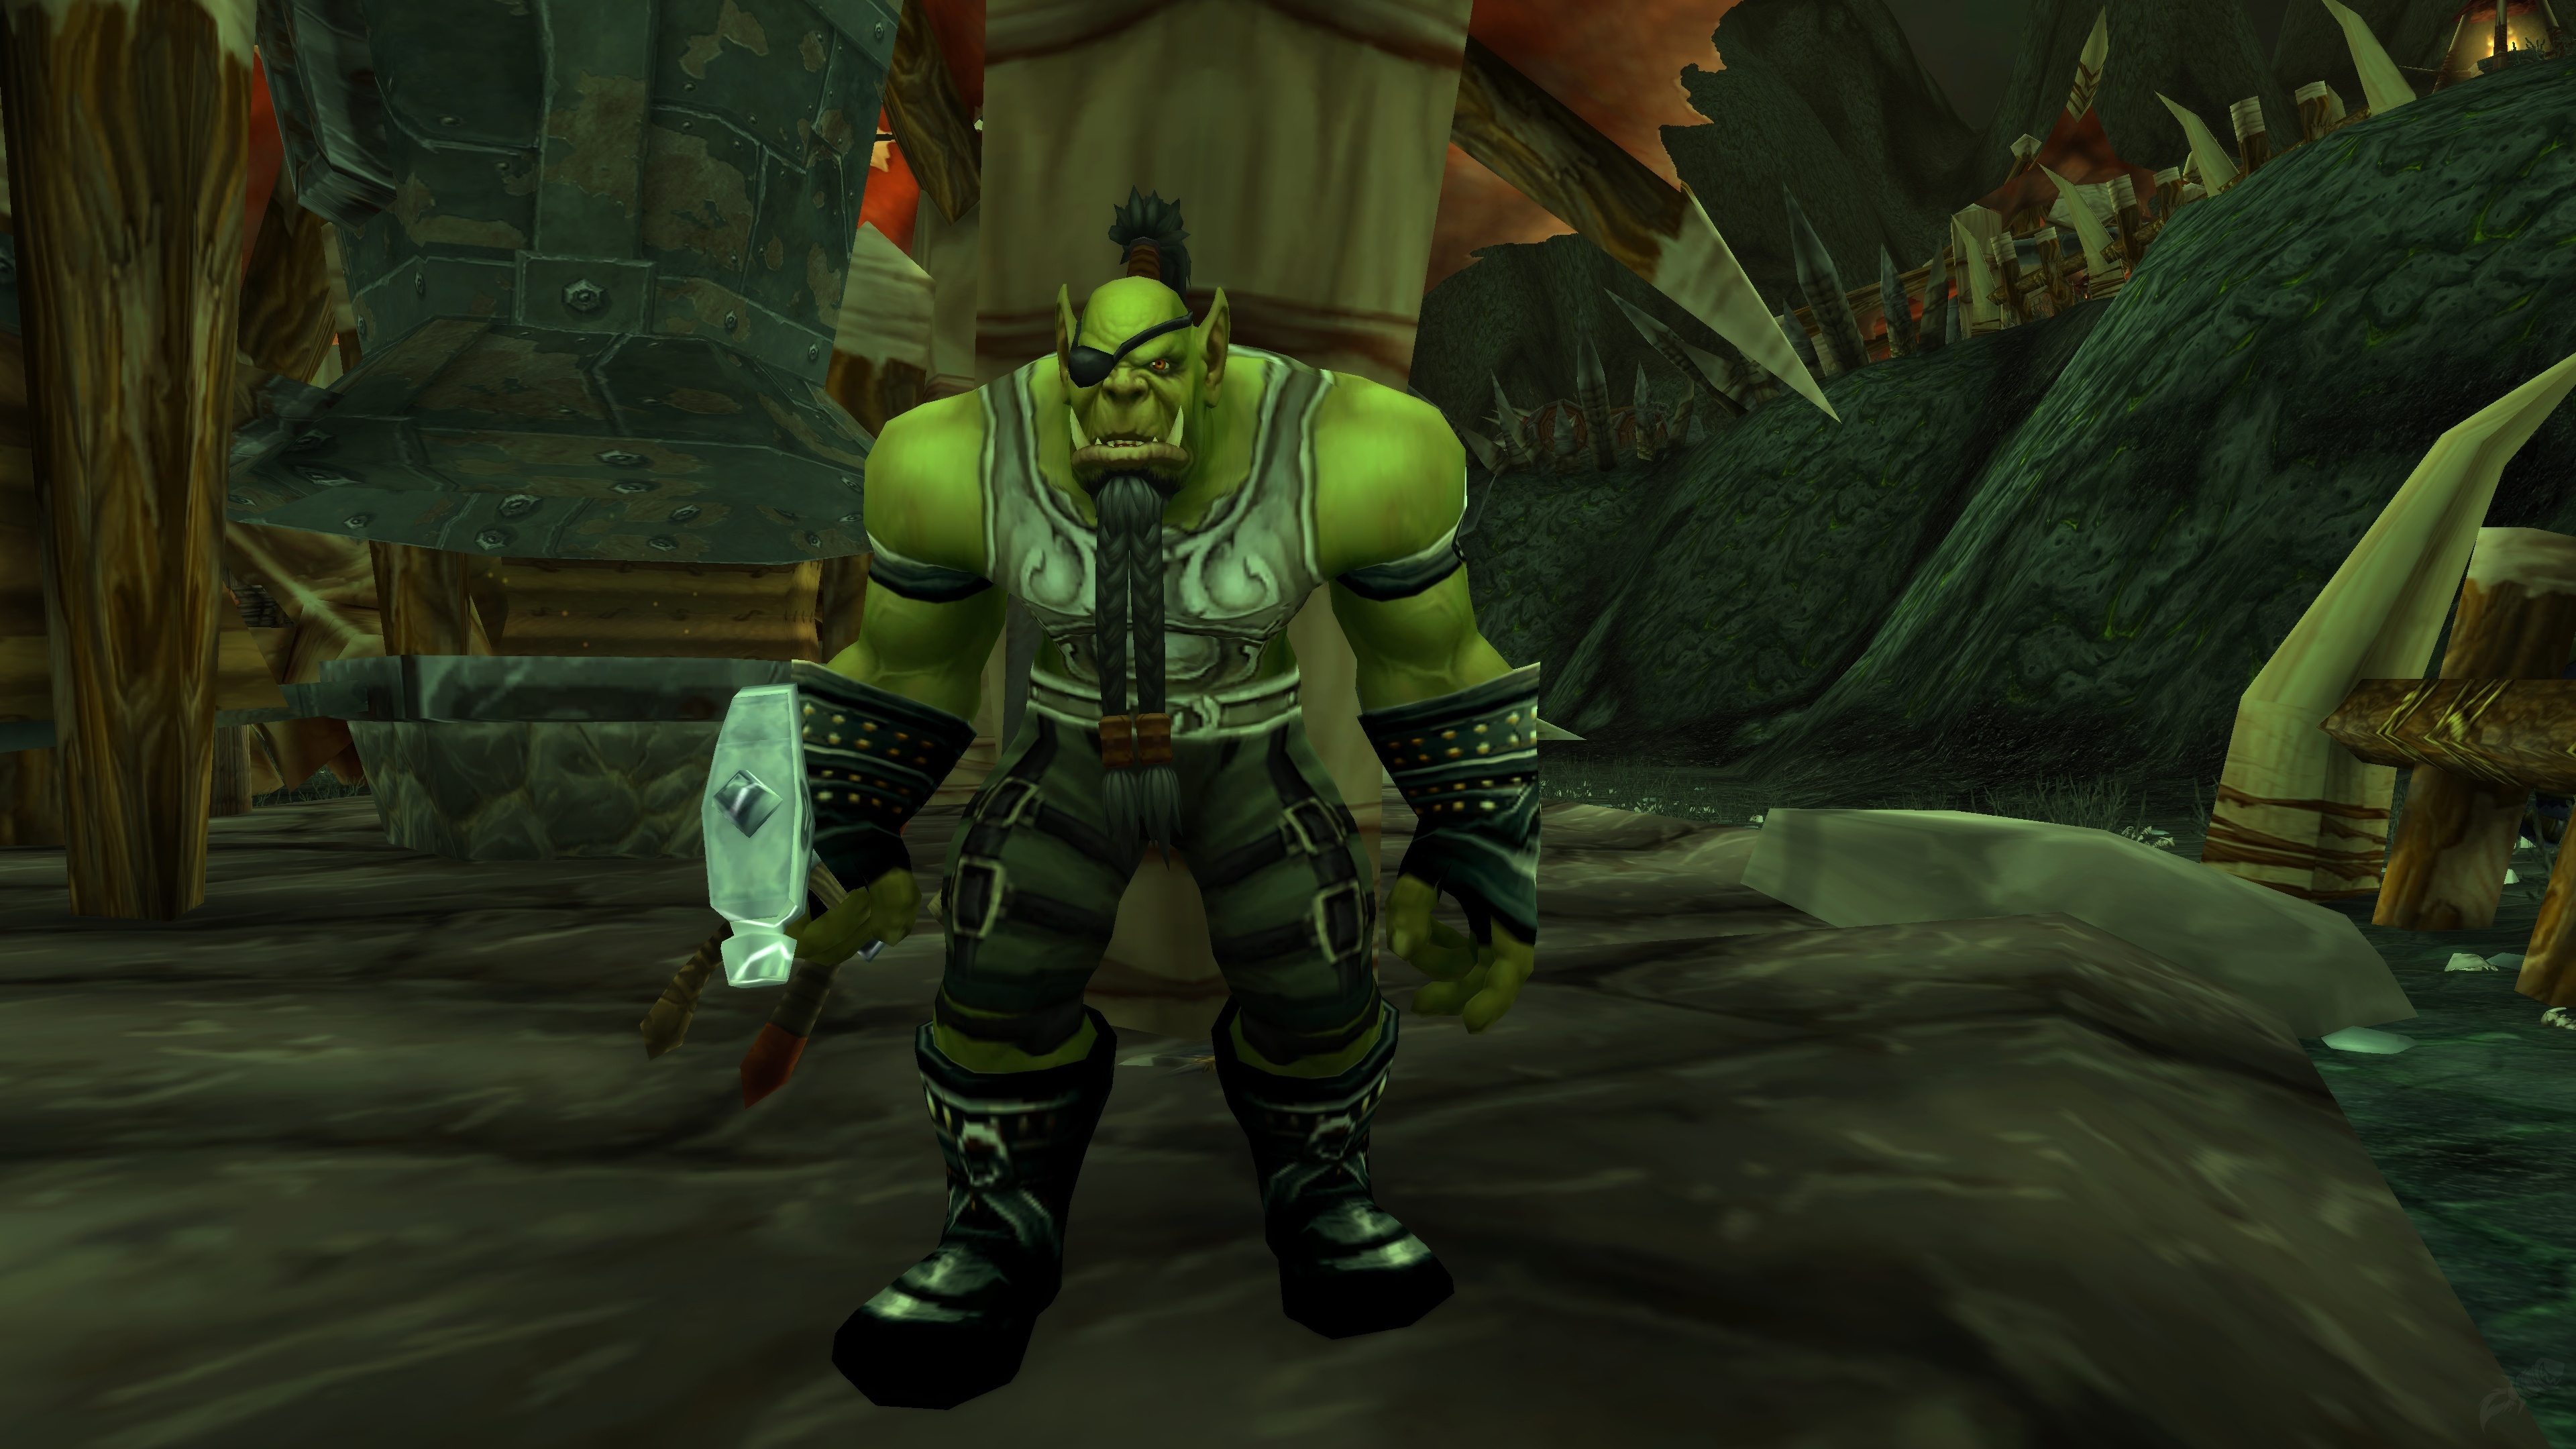 A Cifra da Danação: a missão de Borak - Missão - World of Warcraft